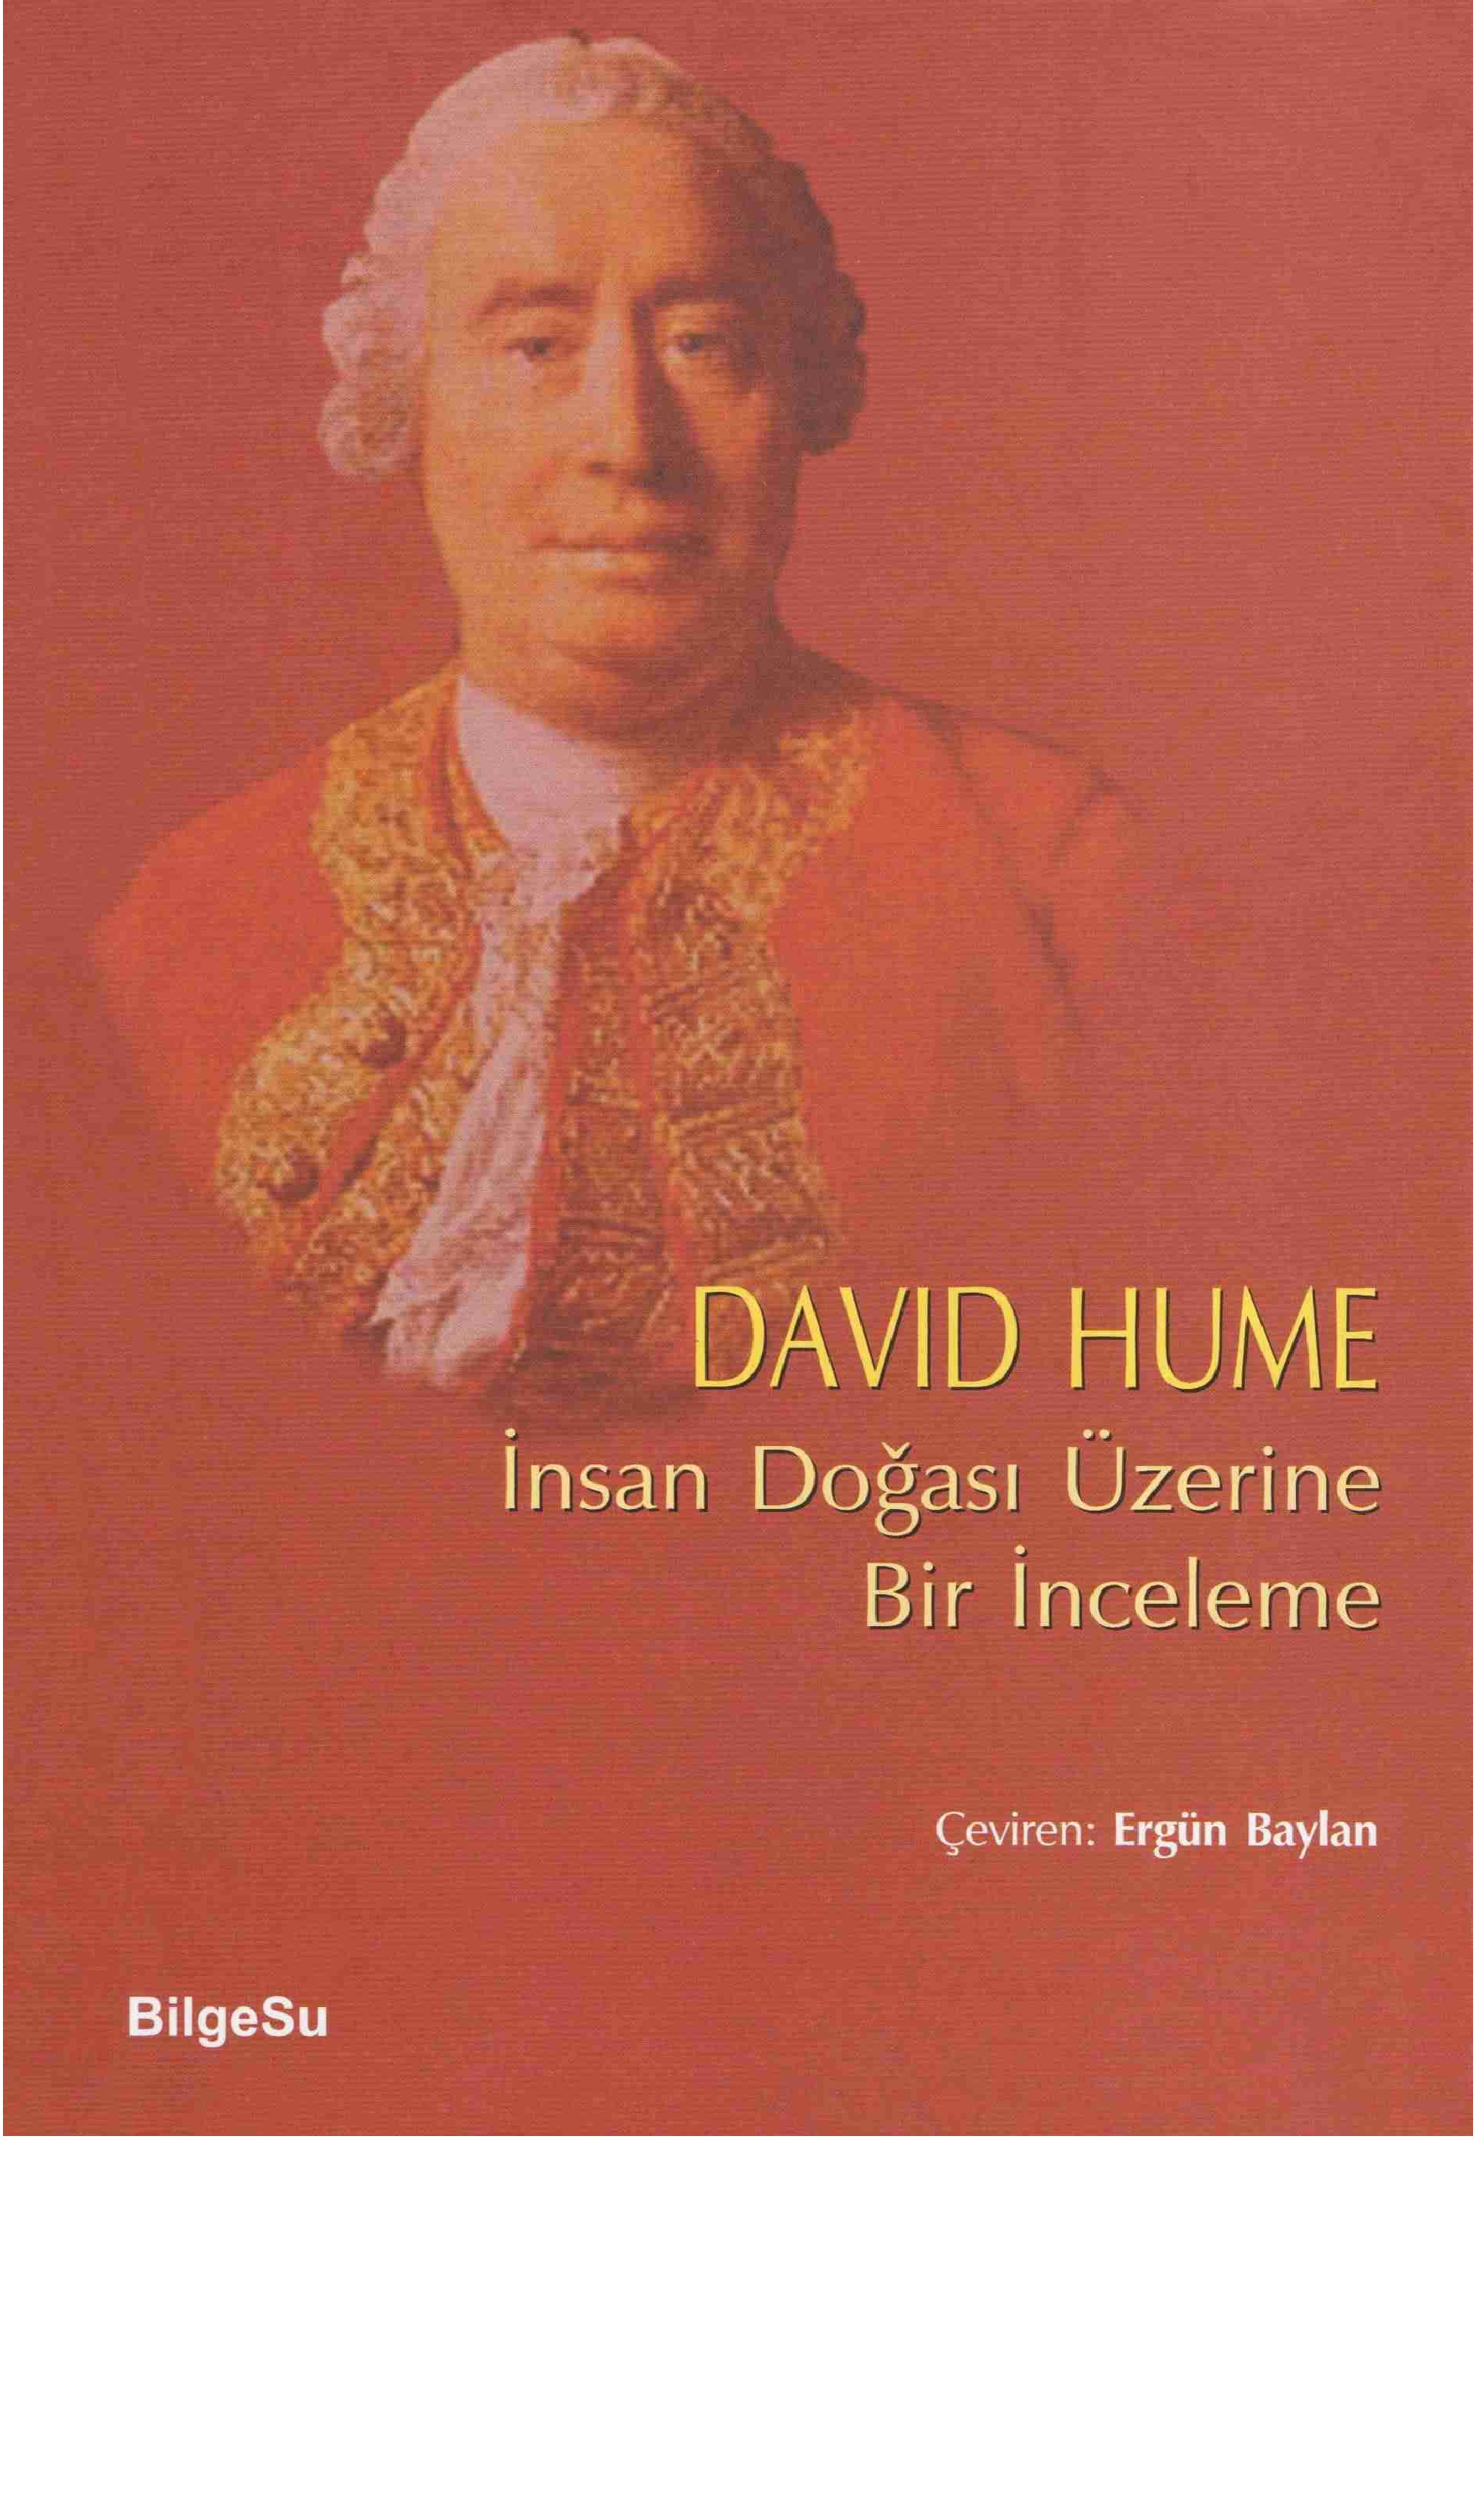 Insan Doğası üzerine Bir Inceleme-David Hume-Ergun Baylan-2009-427s